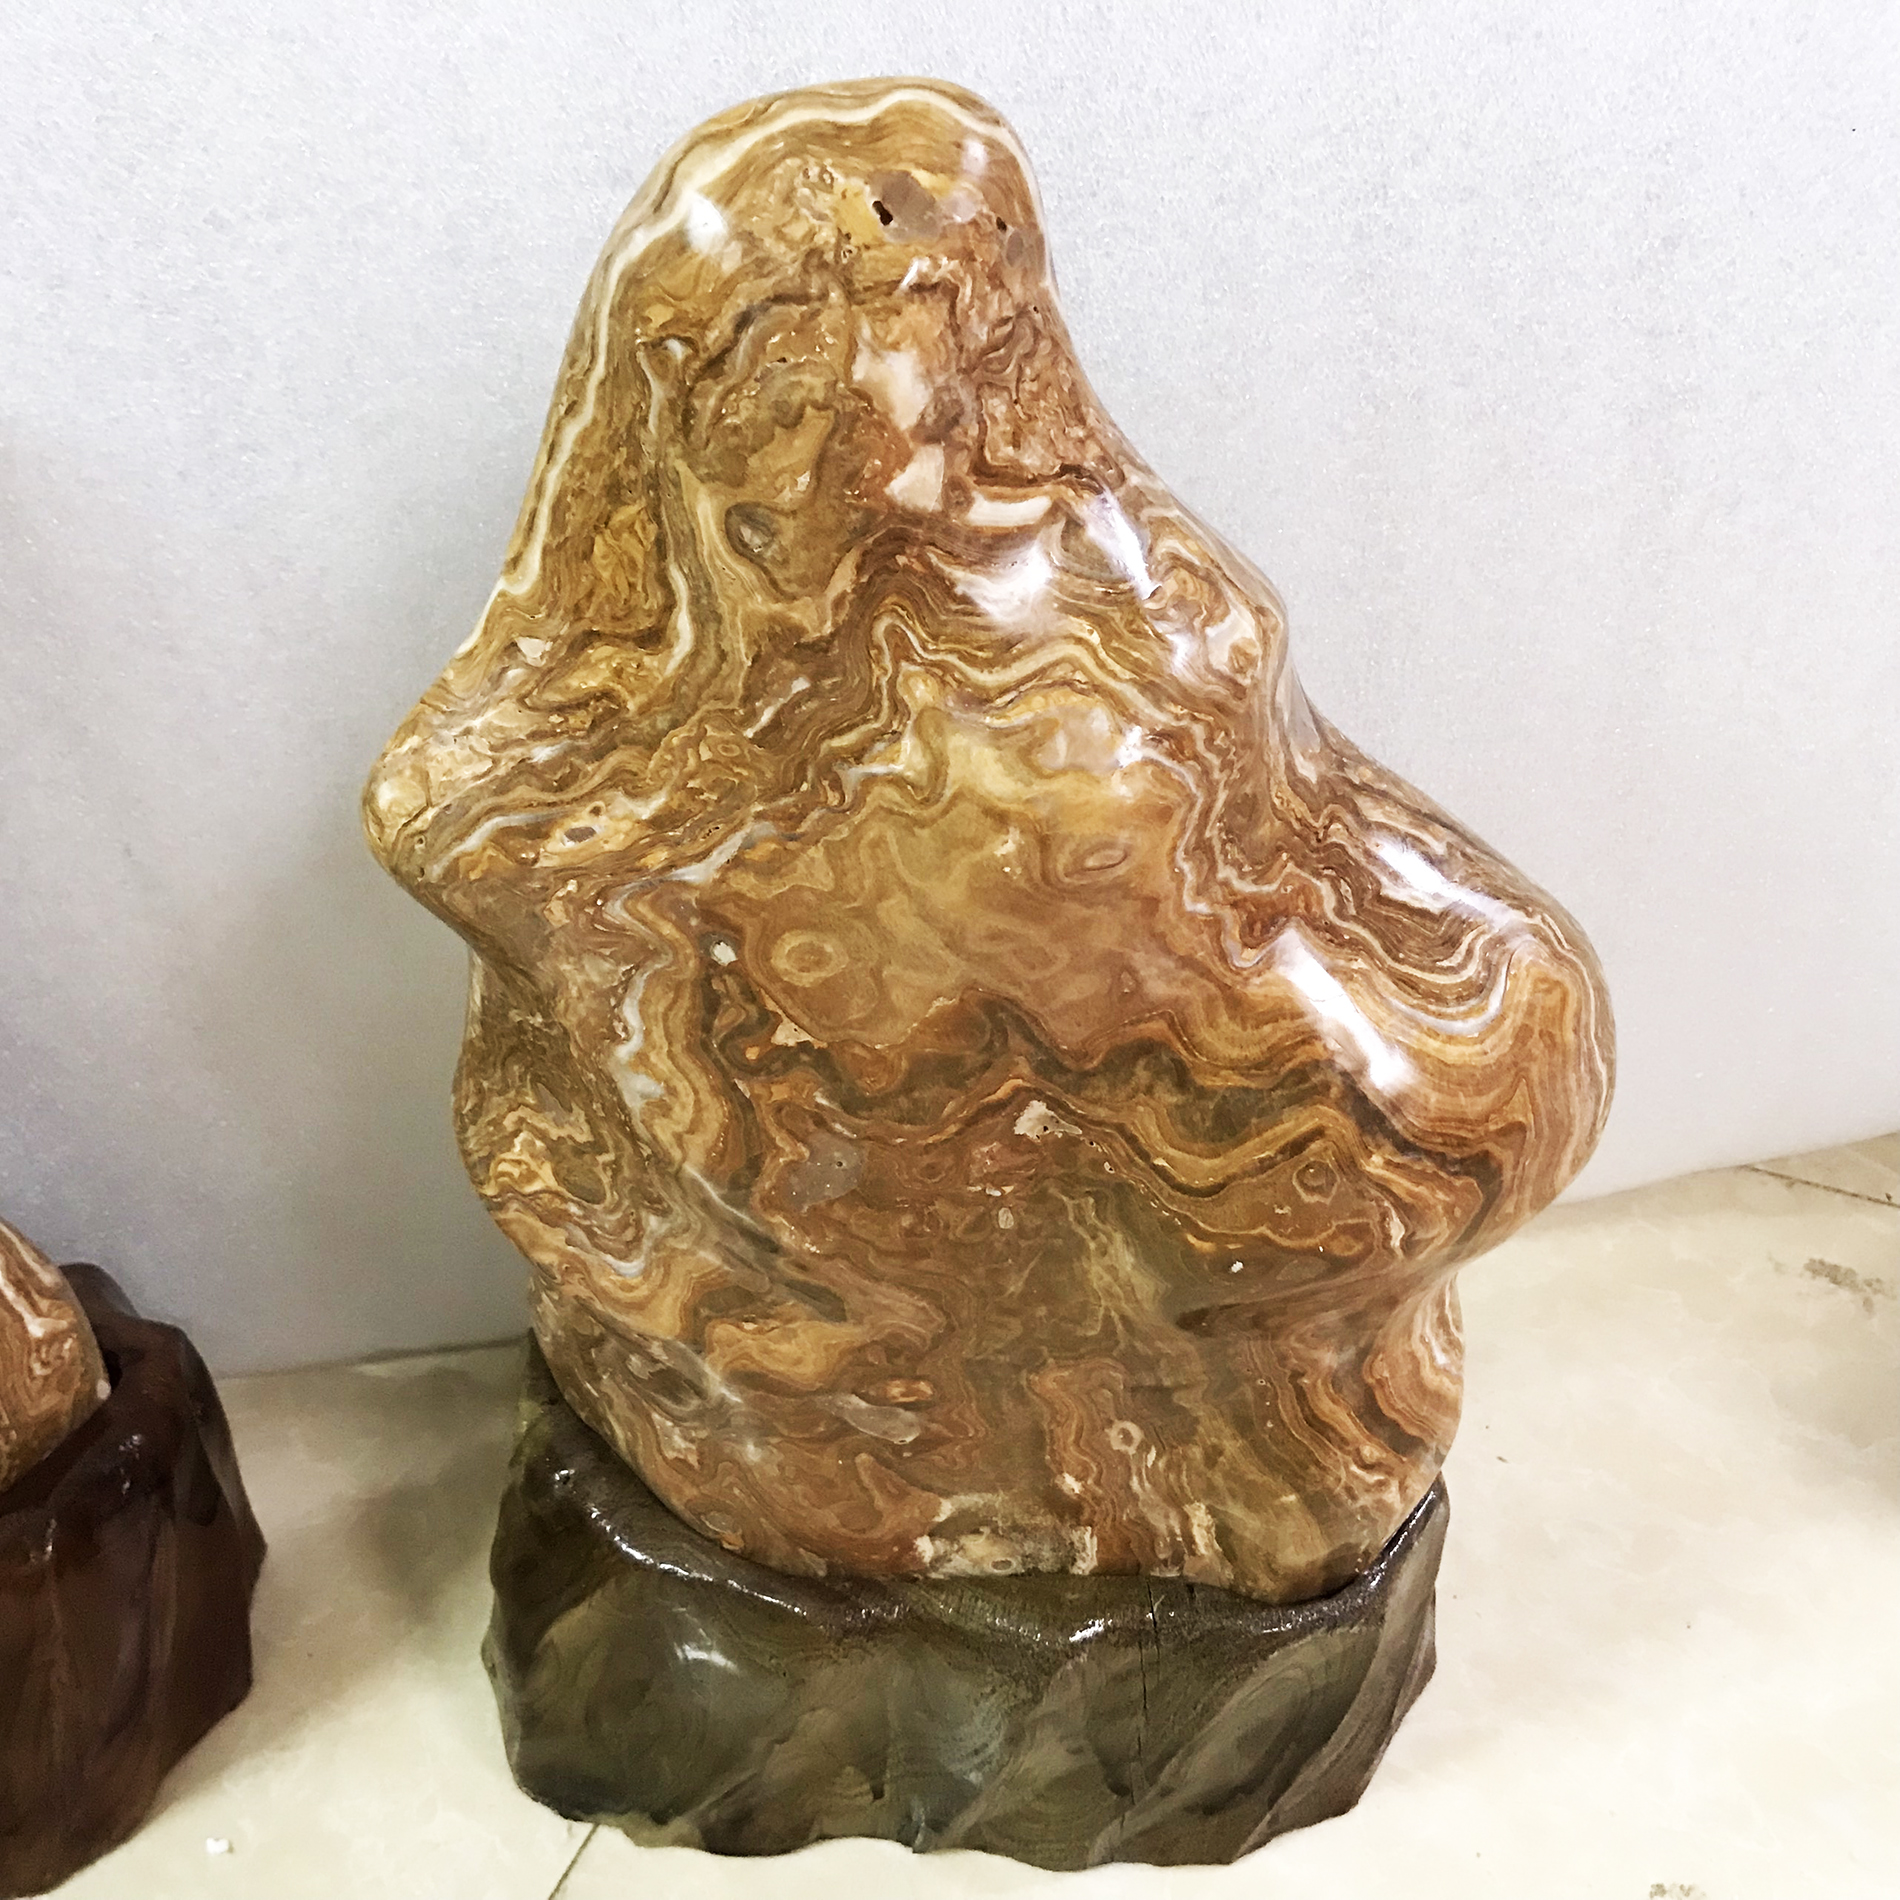 Cây đá màu vàng vân gỗ nặng 12 kg cao 50 cm cho người mệnh Kim và Thổ đá tự nhiên chân đế gỗ rừng